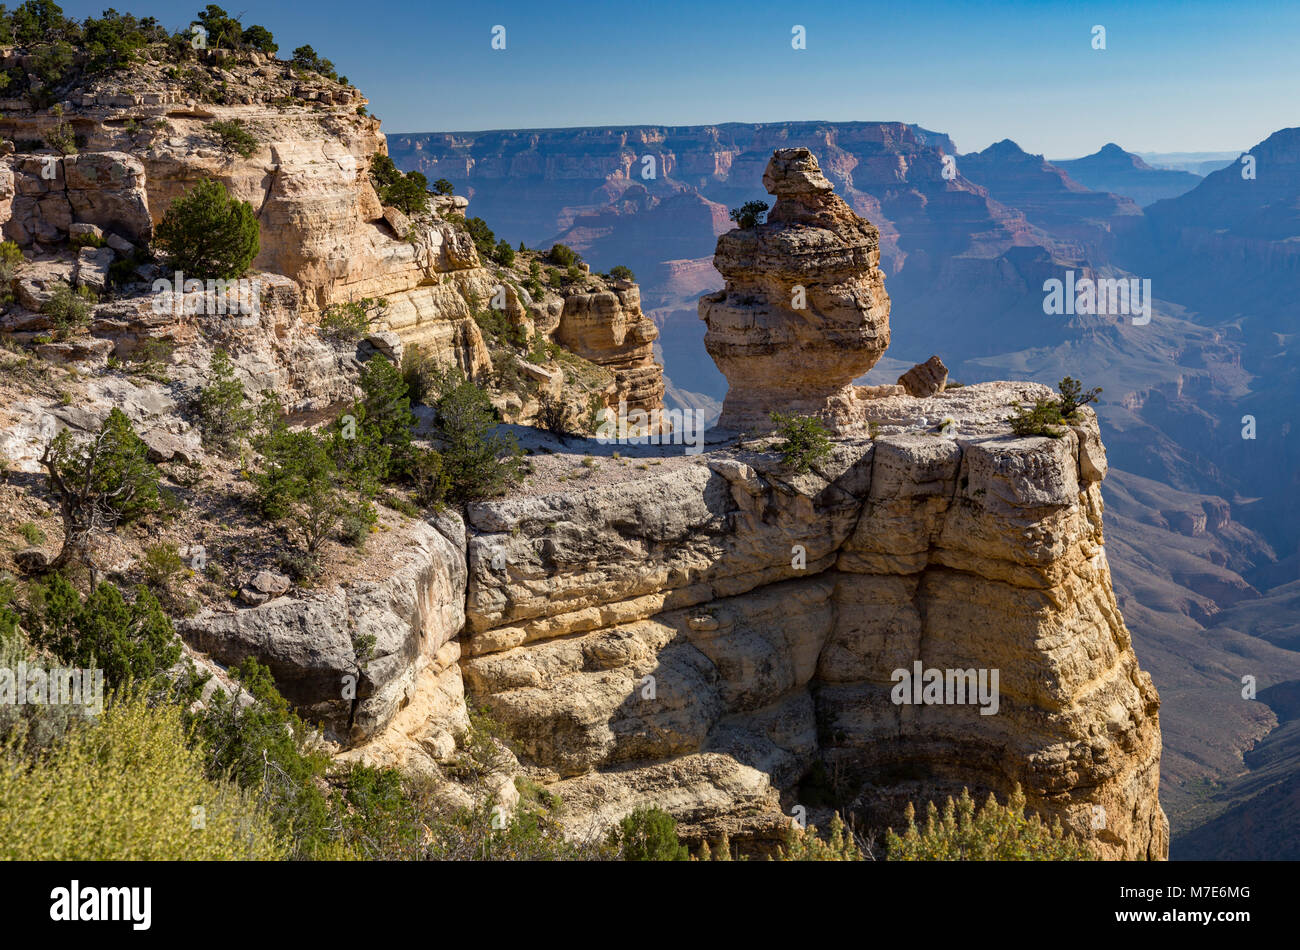 Ente auf eine Felsformation im Duck auf einem Felsen Viewpoint, Grand Canyon, Arizona, USA Stockfoto